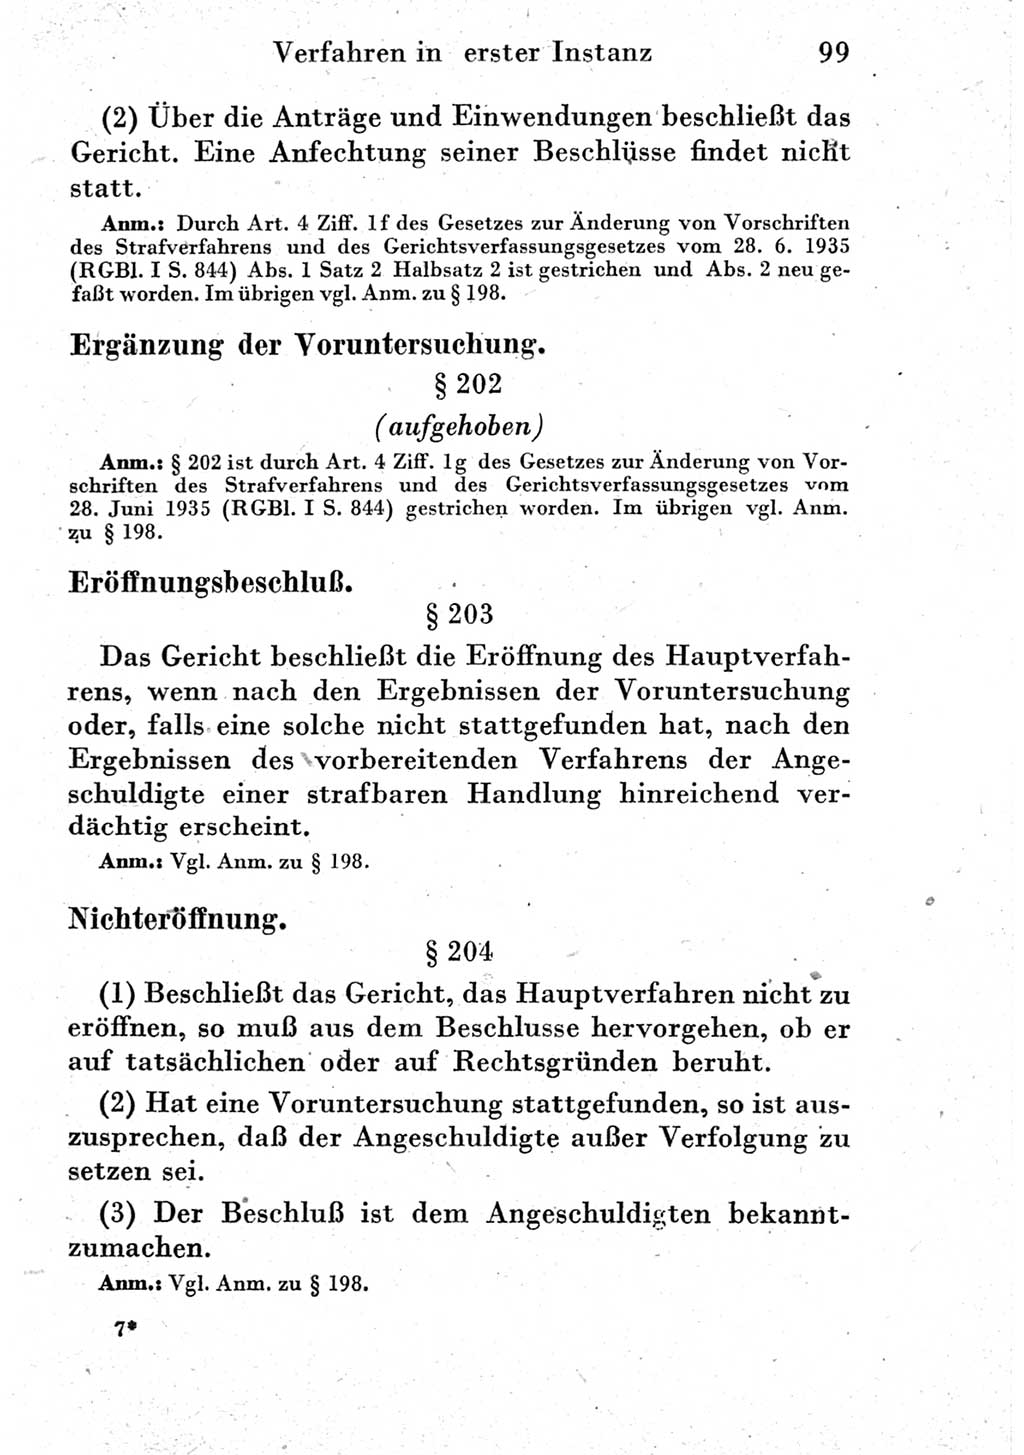 Strafprozeßordnung (StPO), Gerichtsverfassungsgesetz (GVG) und zahlreiche Nebengesetze der Deutschen Demokratischen Republik (DDR) 1950, Seite 99 (StPO GVG Ges. DDR 1950, S. 99)